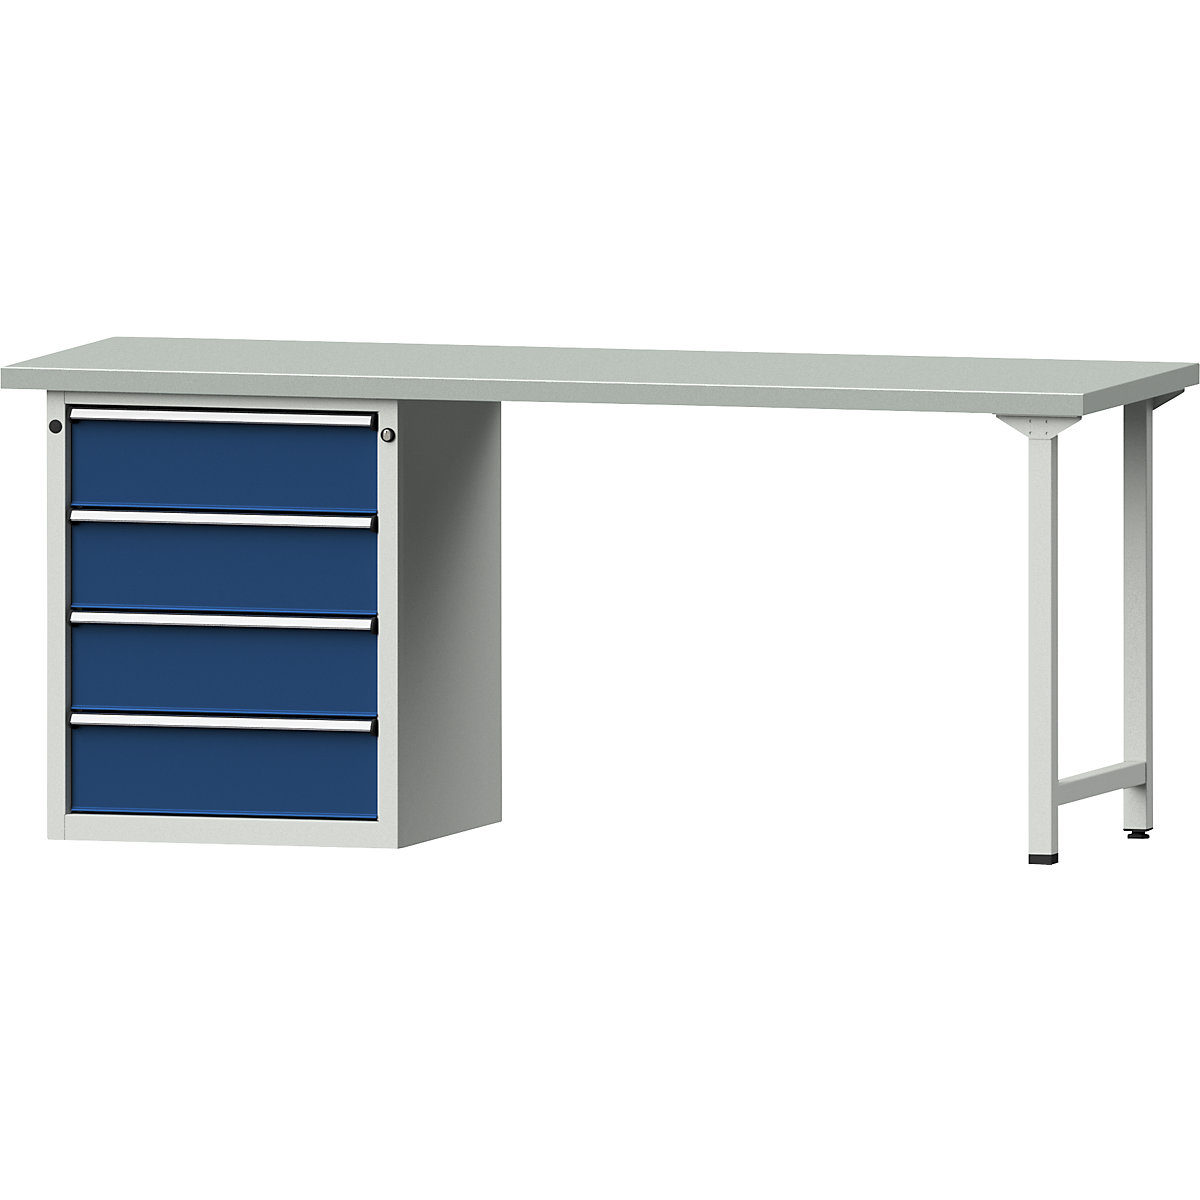 Dílenský stůl s rámovou konstrukcí – ANKE, 4 zásuvky, deska s potahem z ocelového plechu, šířka 2000 mm